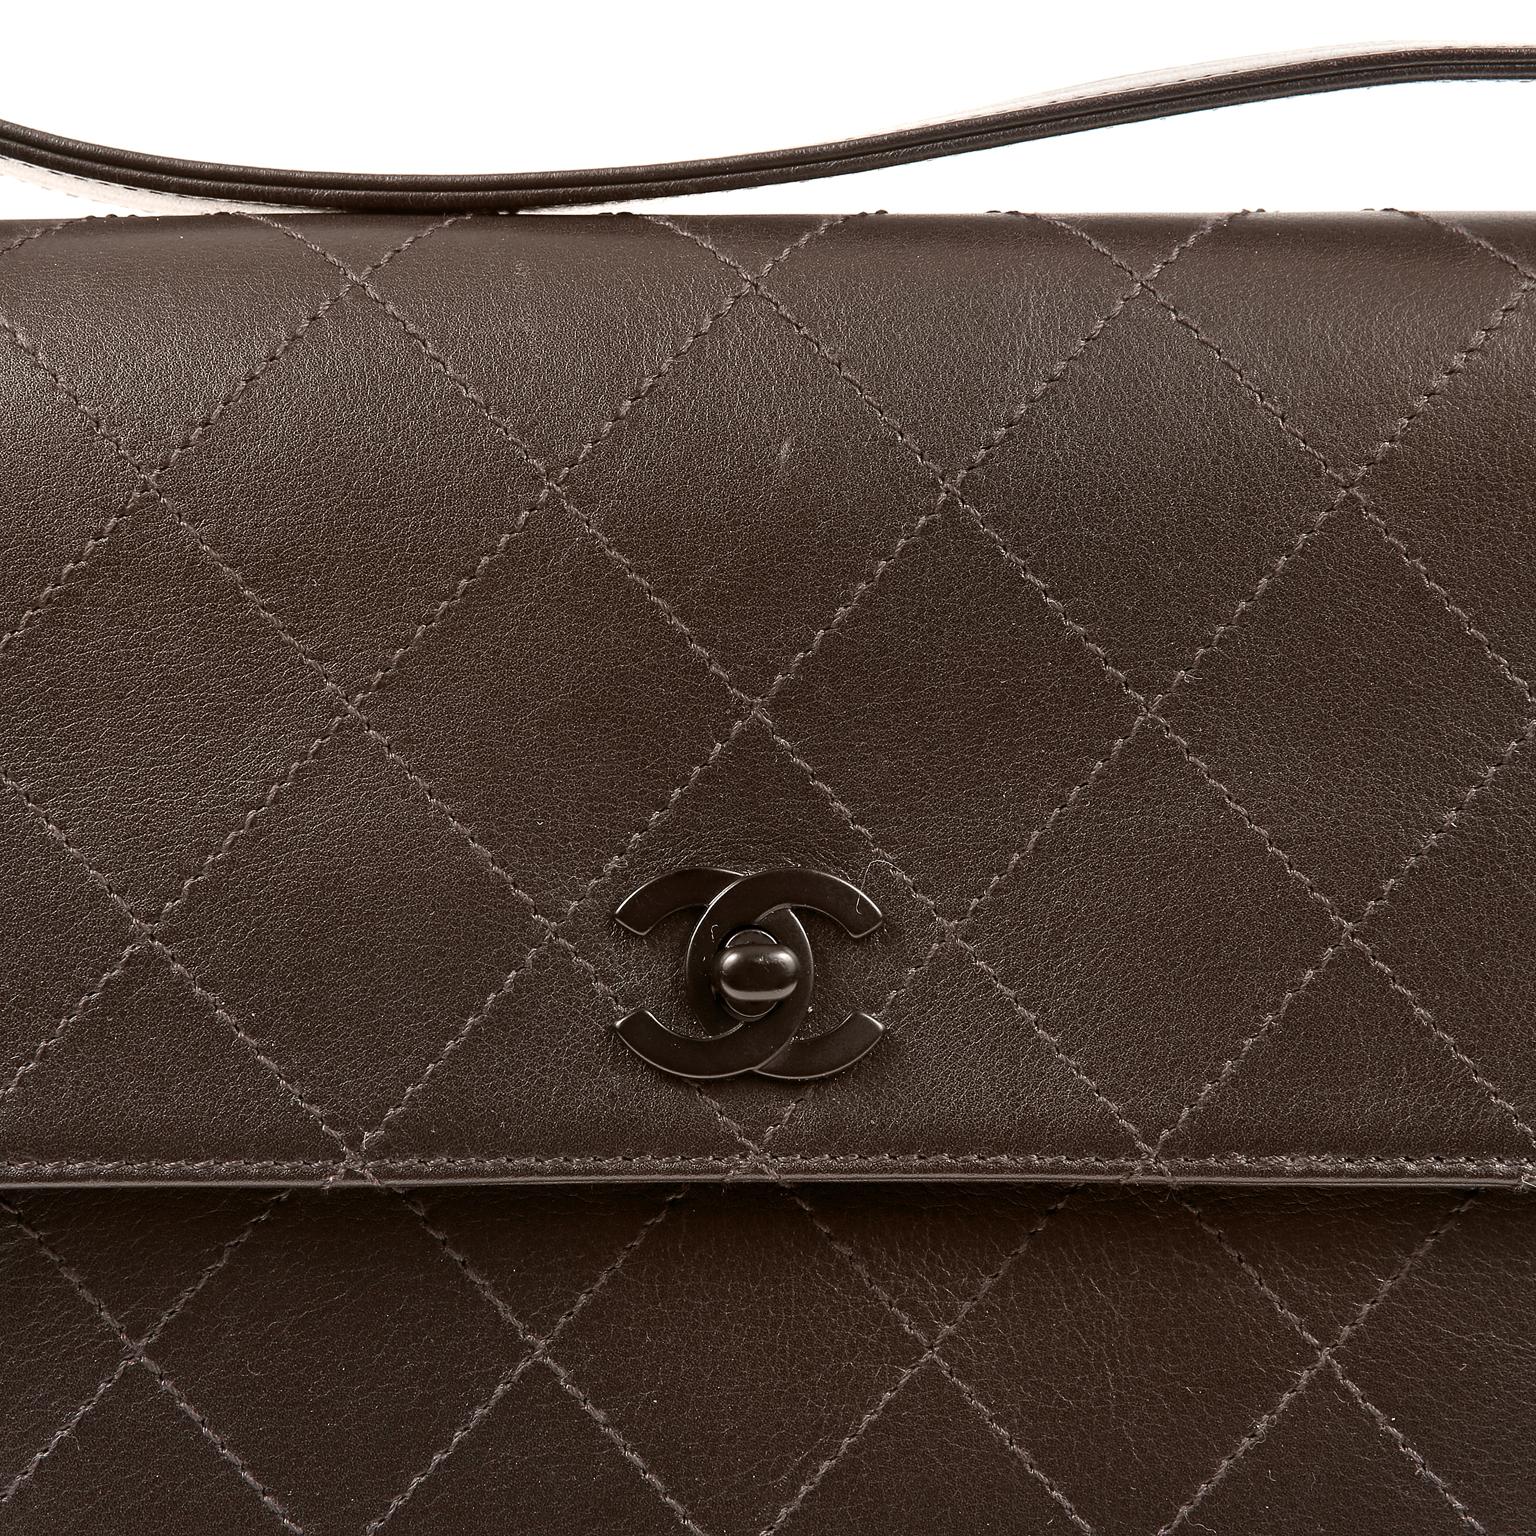 Black Chanel Brown Leather Flat Stitched Shoulder Bag